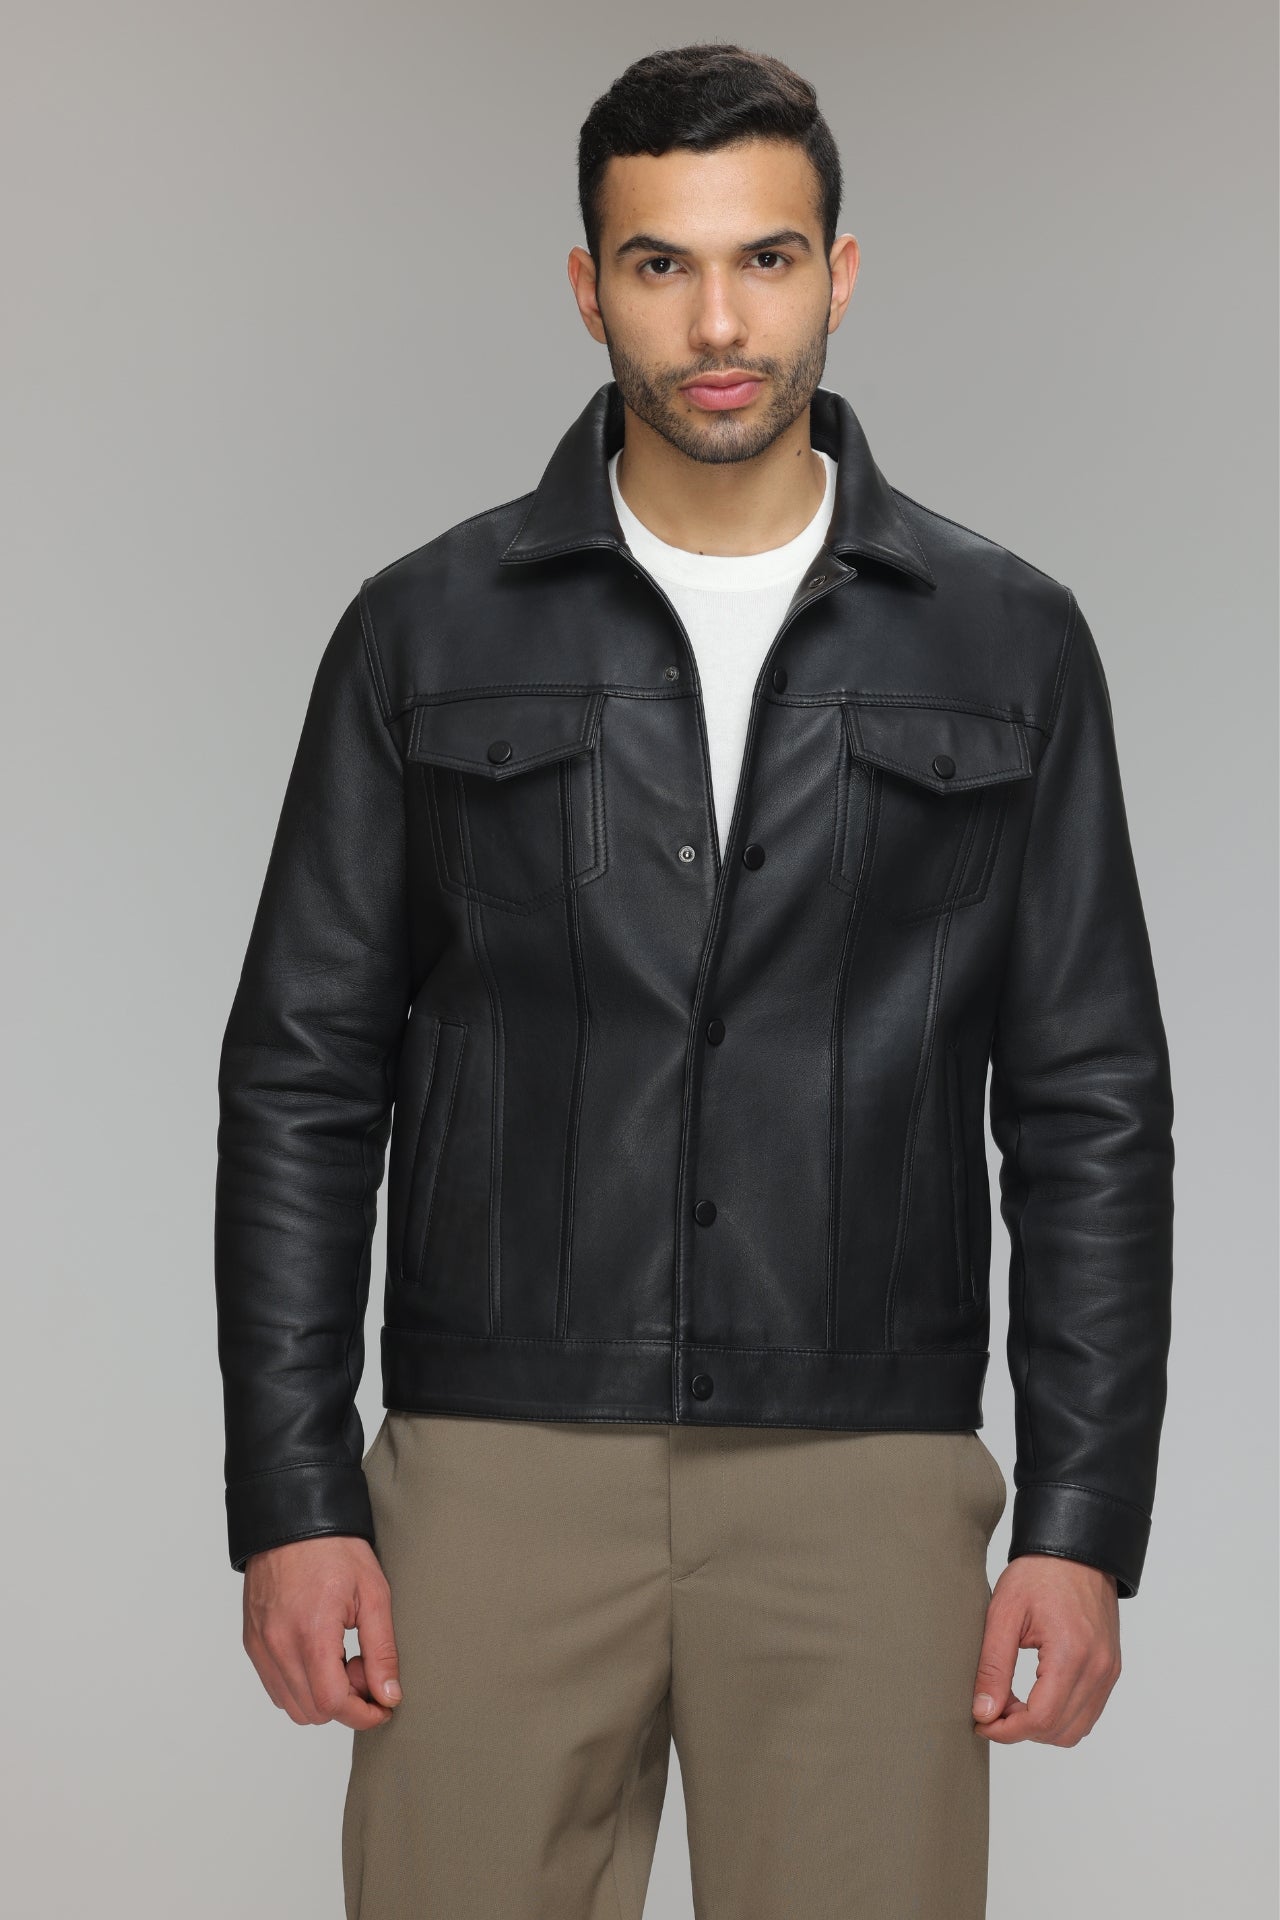 Black Leather Denim Jacket - Rugged & Iconic.